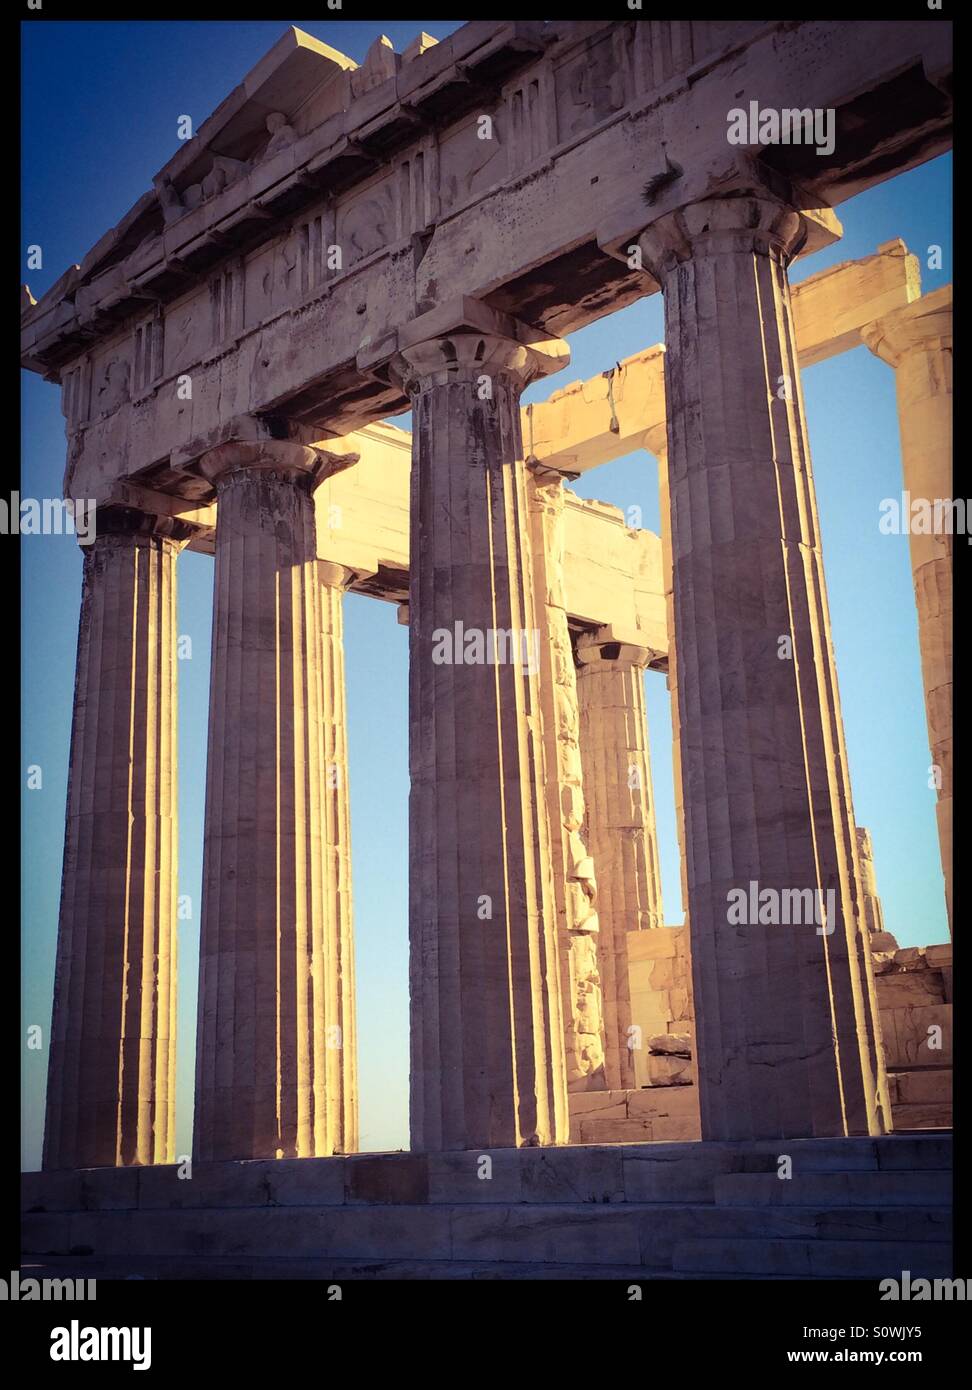 The Acropolis of Athens. Stock Photo